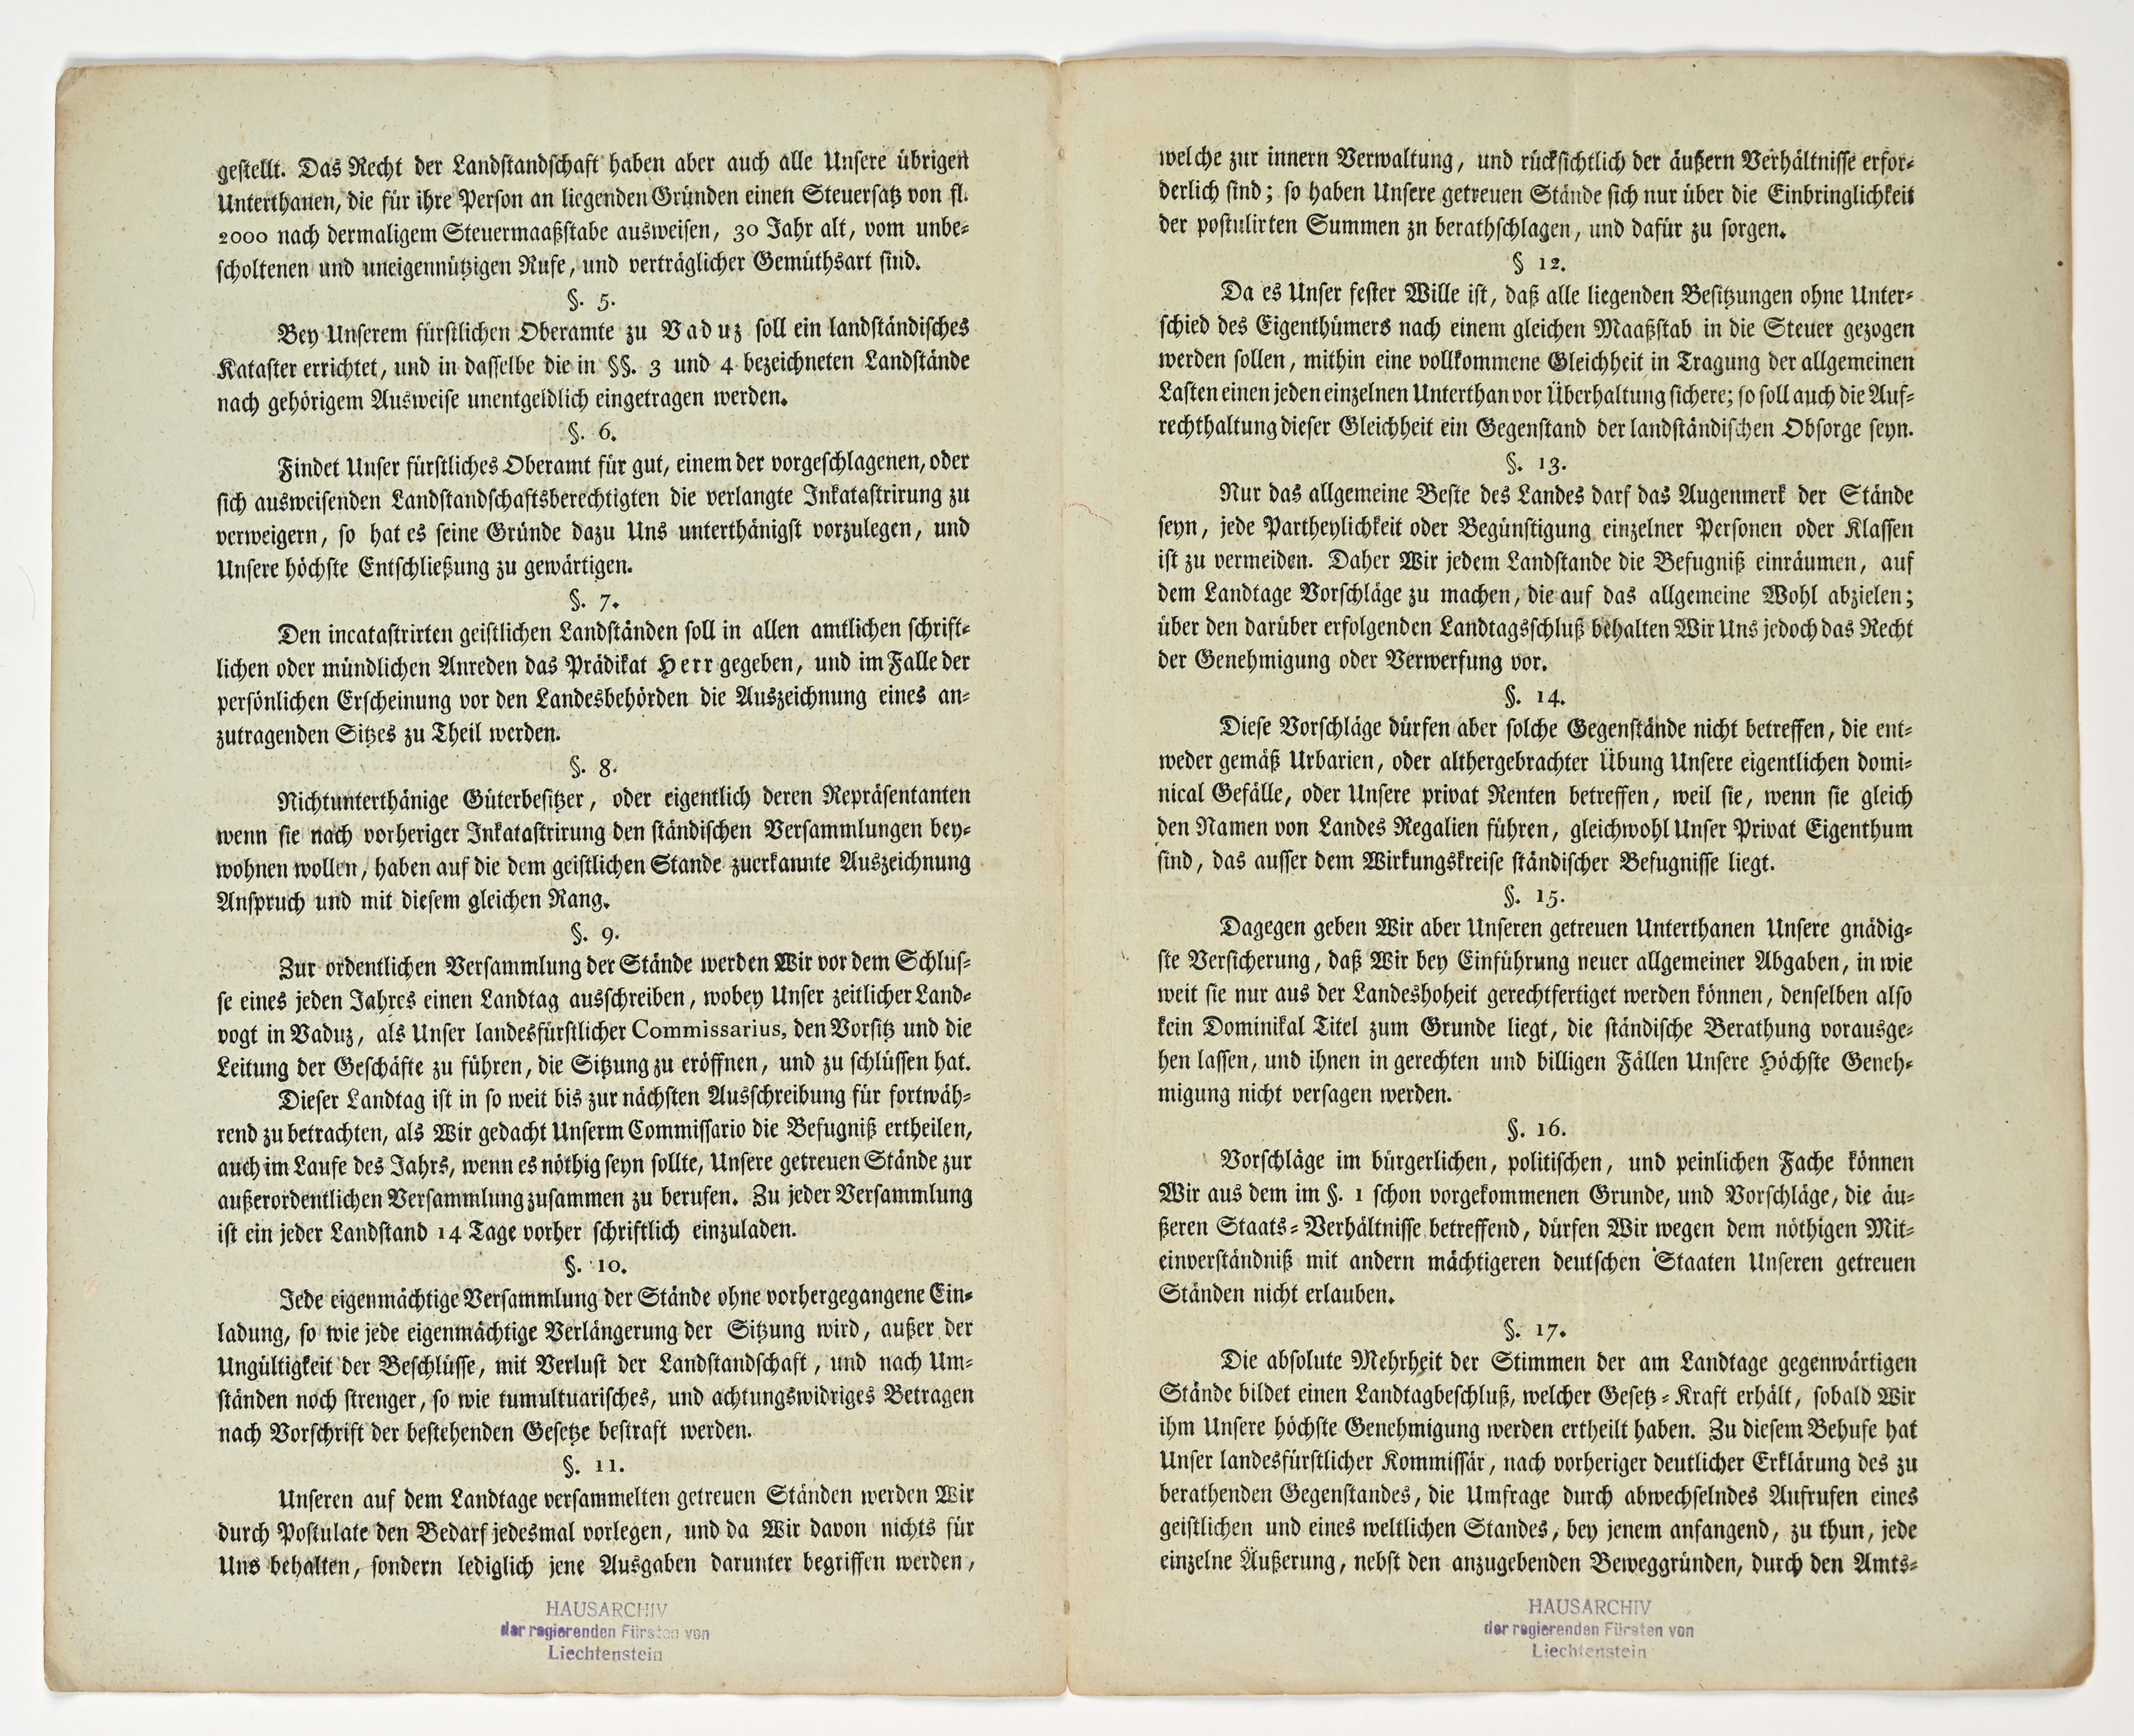 Landständische Verfassung 1818  § 5 bis § 17